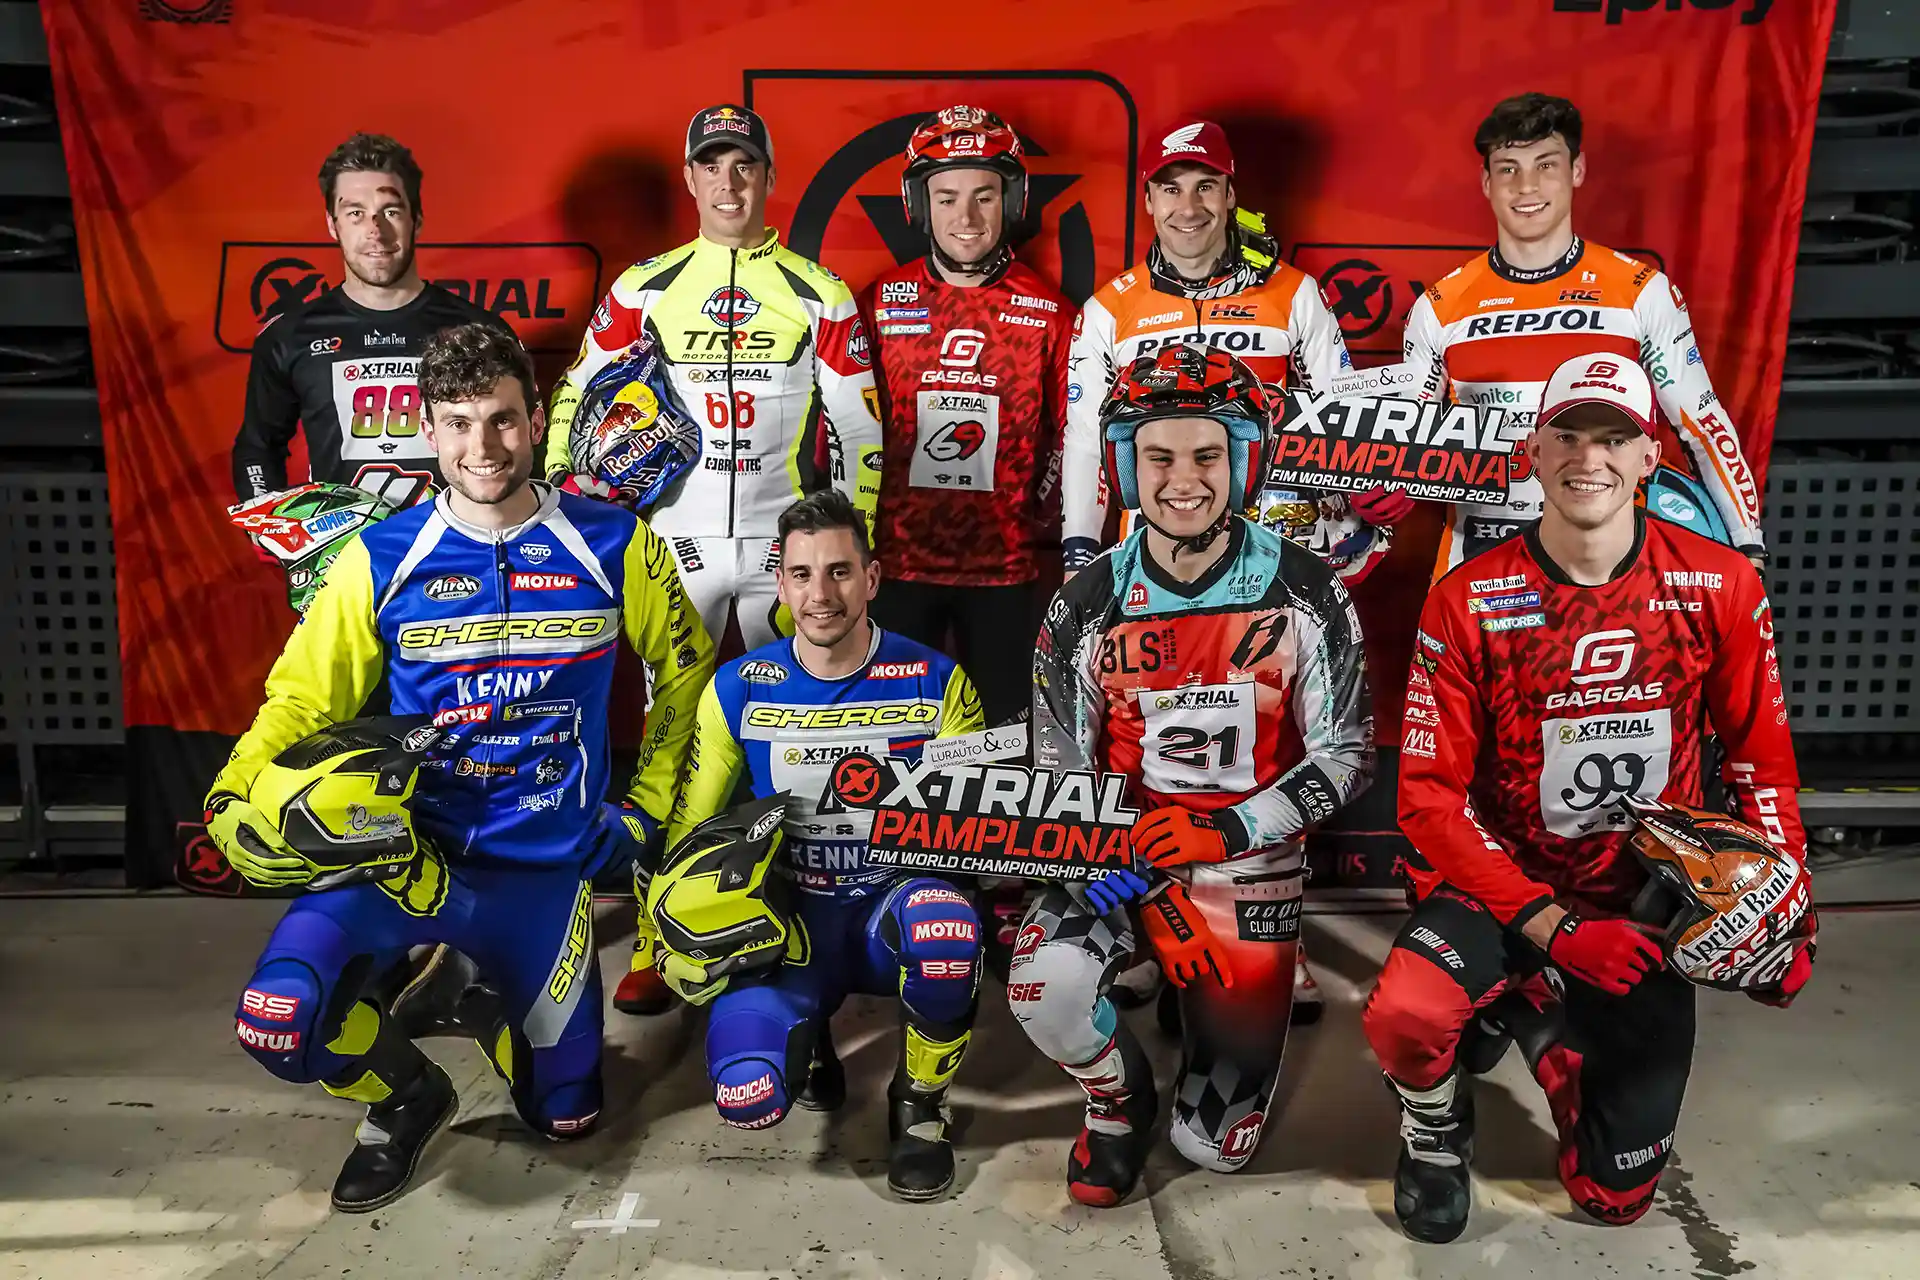 Pamplona acoge por primera vez una de las pruebas del Campeonato del Mundo de X-trial, dentro del Calendario Oficial de la Federación Internacional de Motociclismo